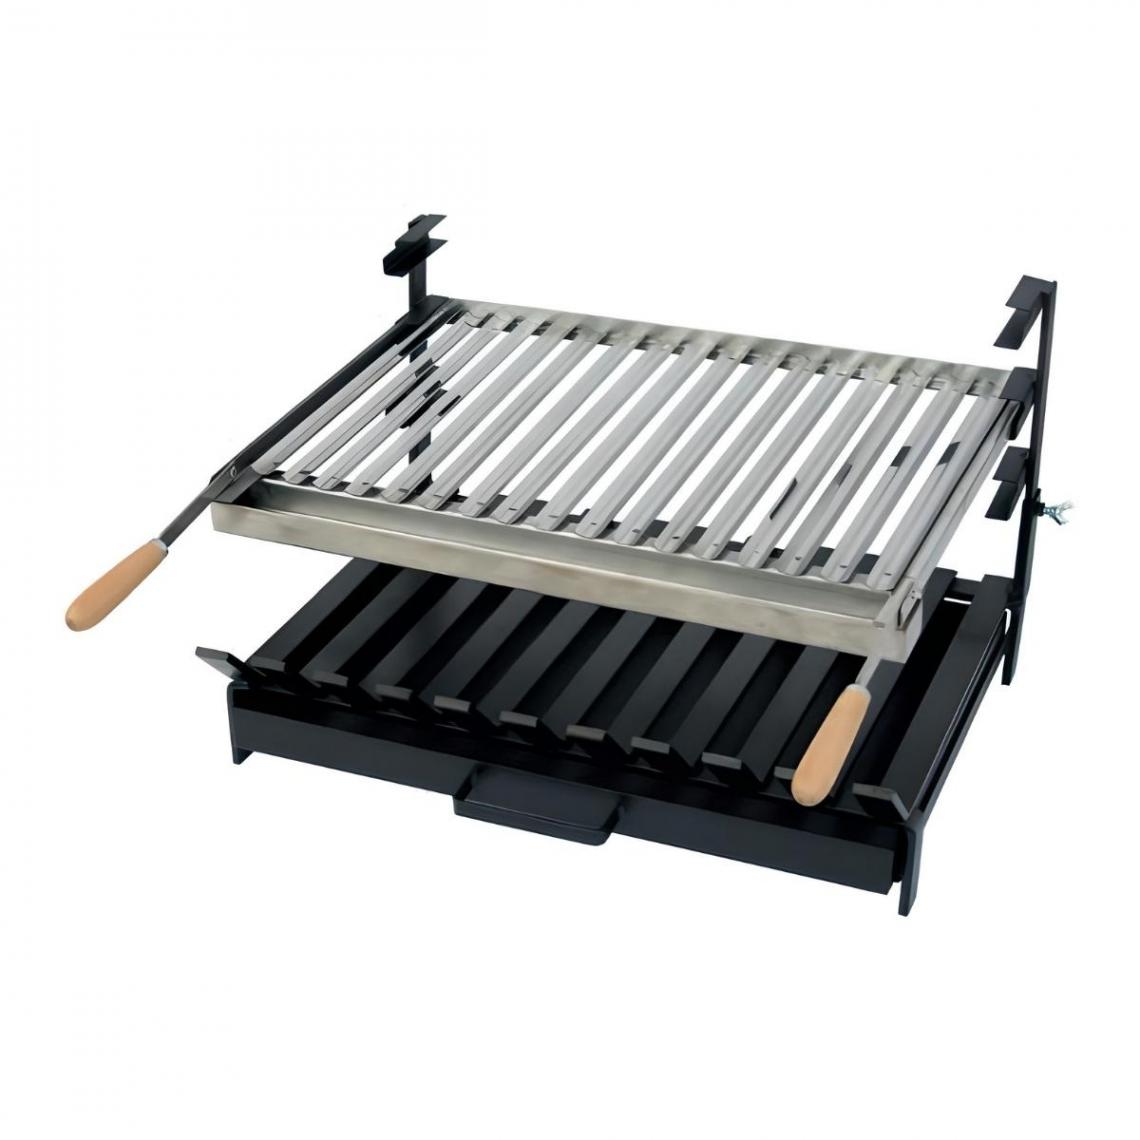 Visiodirect - Grille à rôtir avec tiroir et récupérateur de graisse en Inox coloris Noir -50 x 45 x 40 cm - Accessoires barbecue